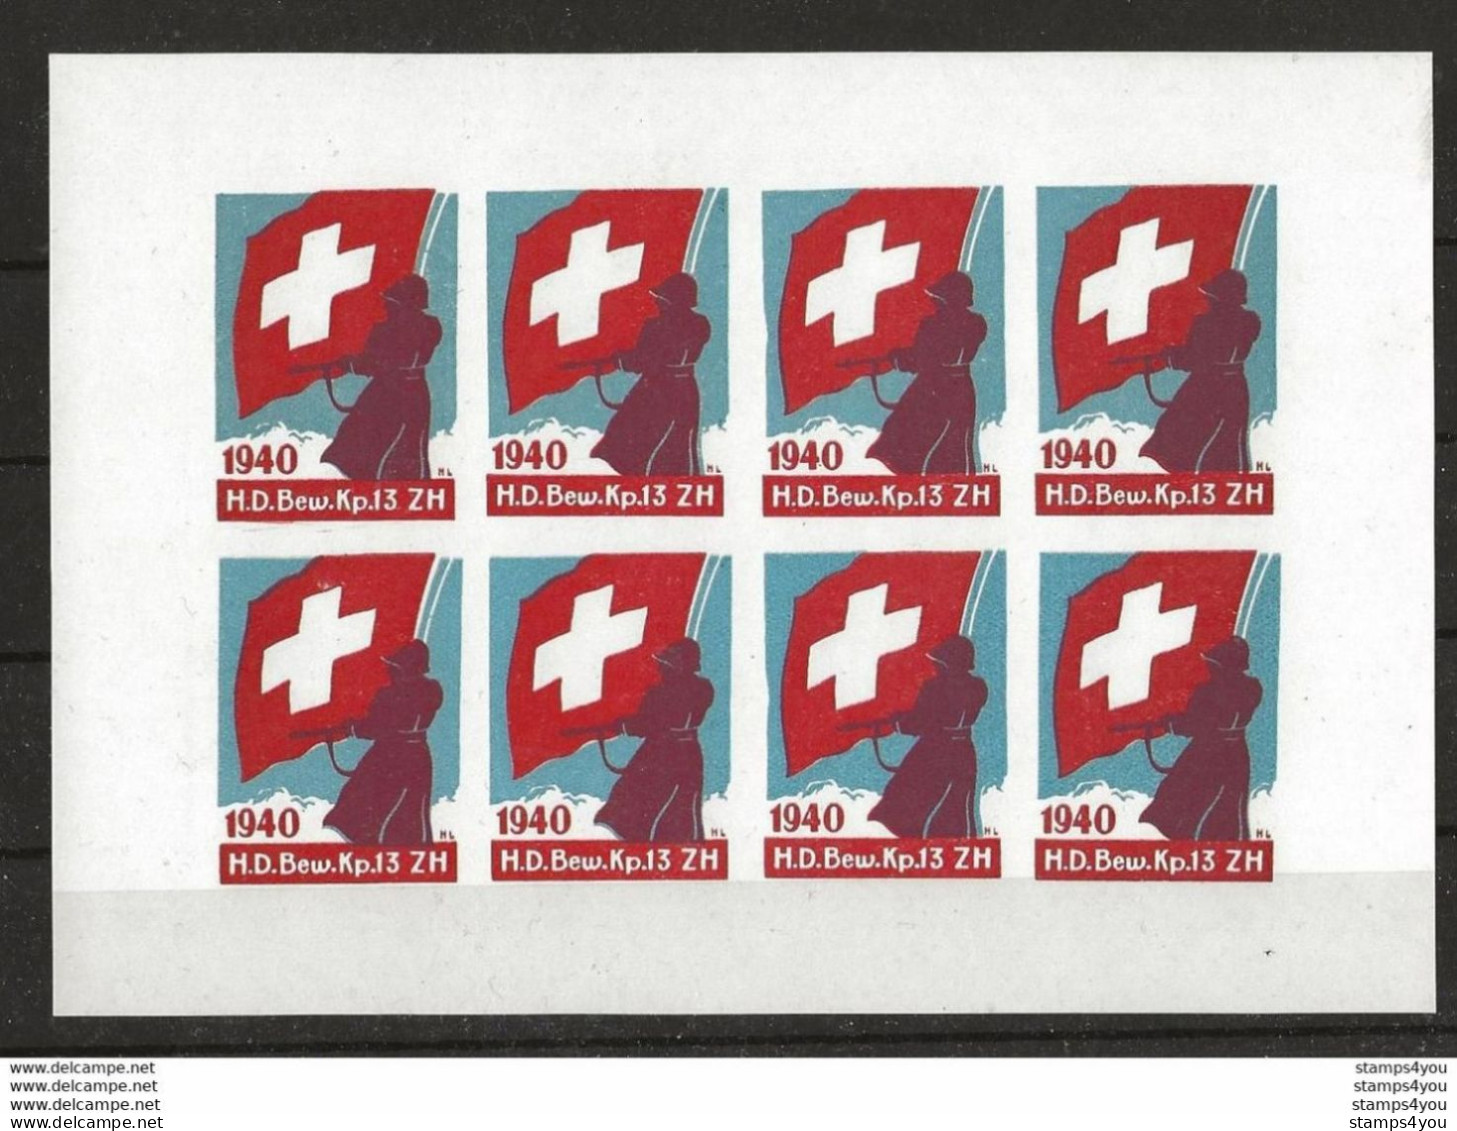 406 - 39 -  Feuillet Timbres Non-dentelés     "H.D. Bew. Kp.13. ZH  1940" - Labels